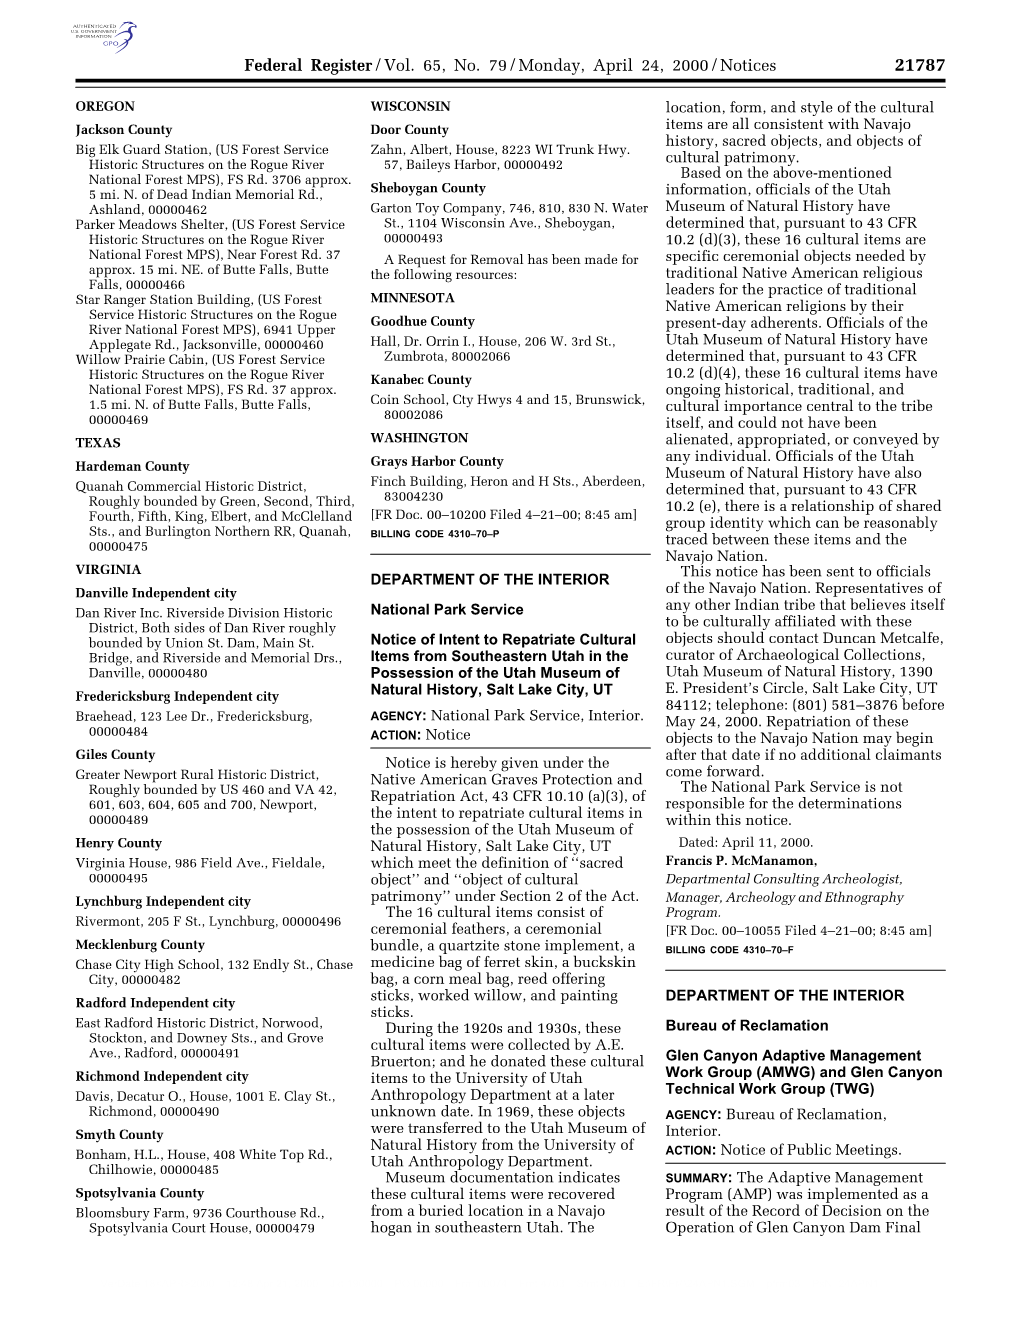 Federal Register/Vol. 65, No. 79/Monday, April 24, 2000/Notices